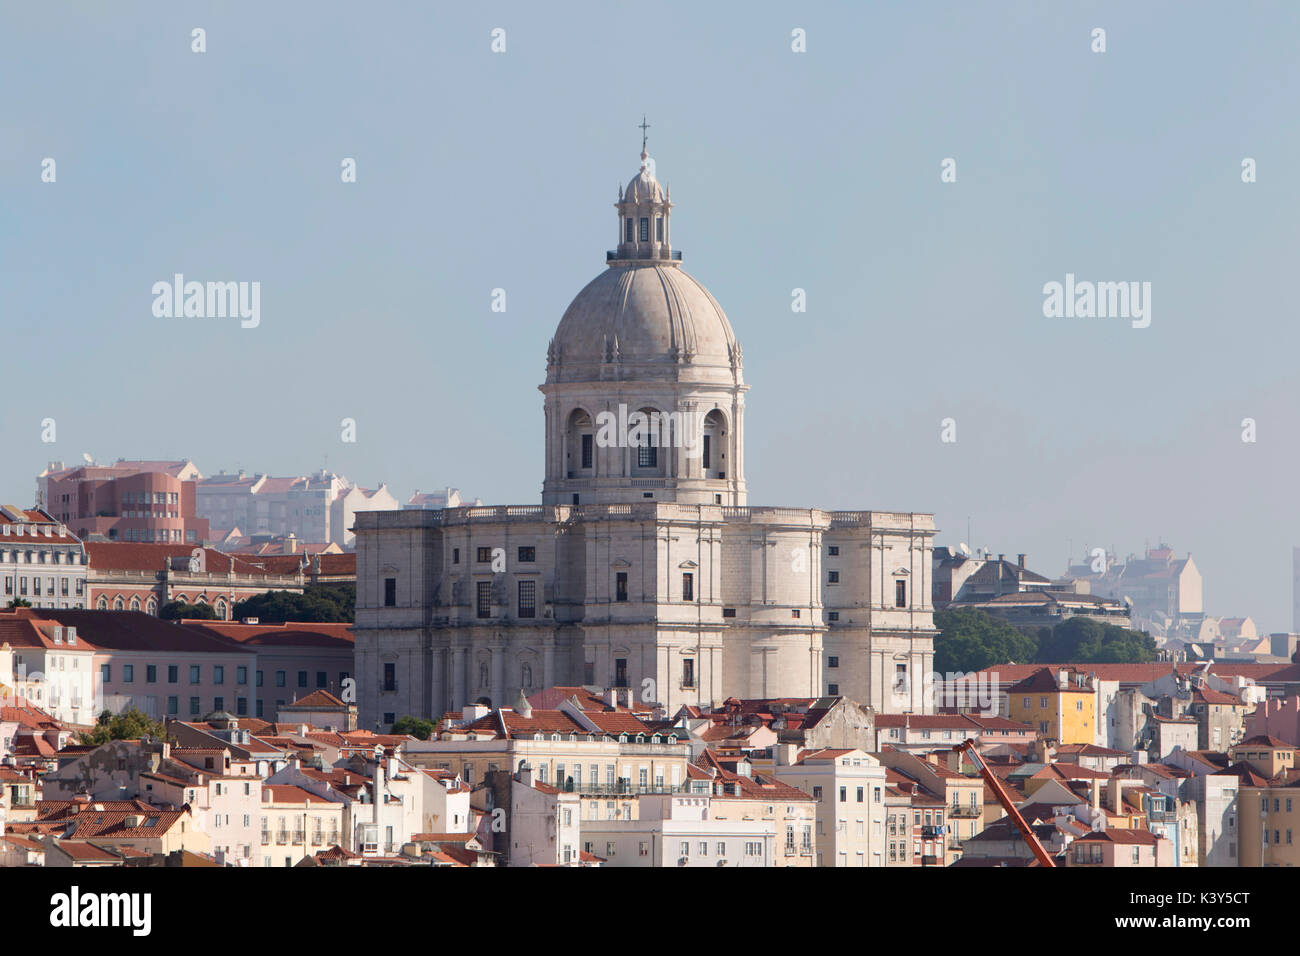 Lisbona, la capitale e la città più grande del Portogallo nel quartiere di Alfama sulla costa atlantica in Europa occidentale Foto Stock